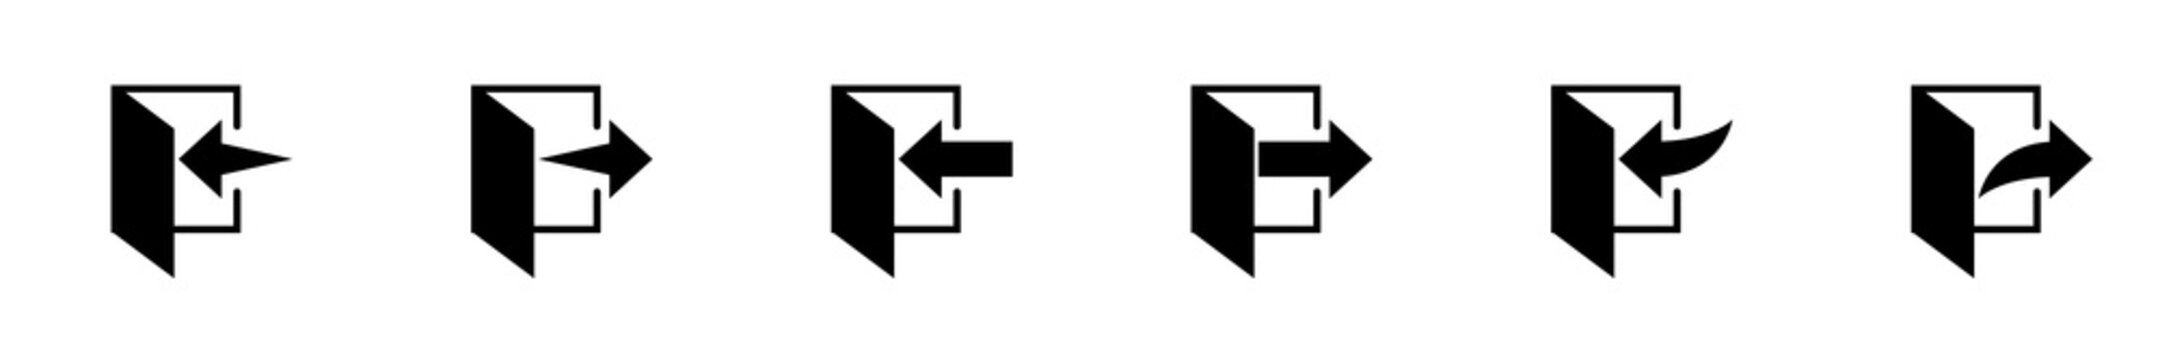 Conjunto de iconos de señal de entrada y salida. Ilustración vectorial, estilo flechas